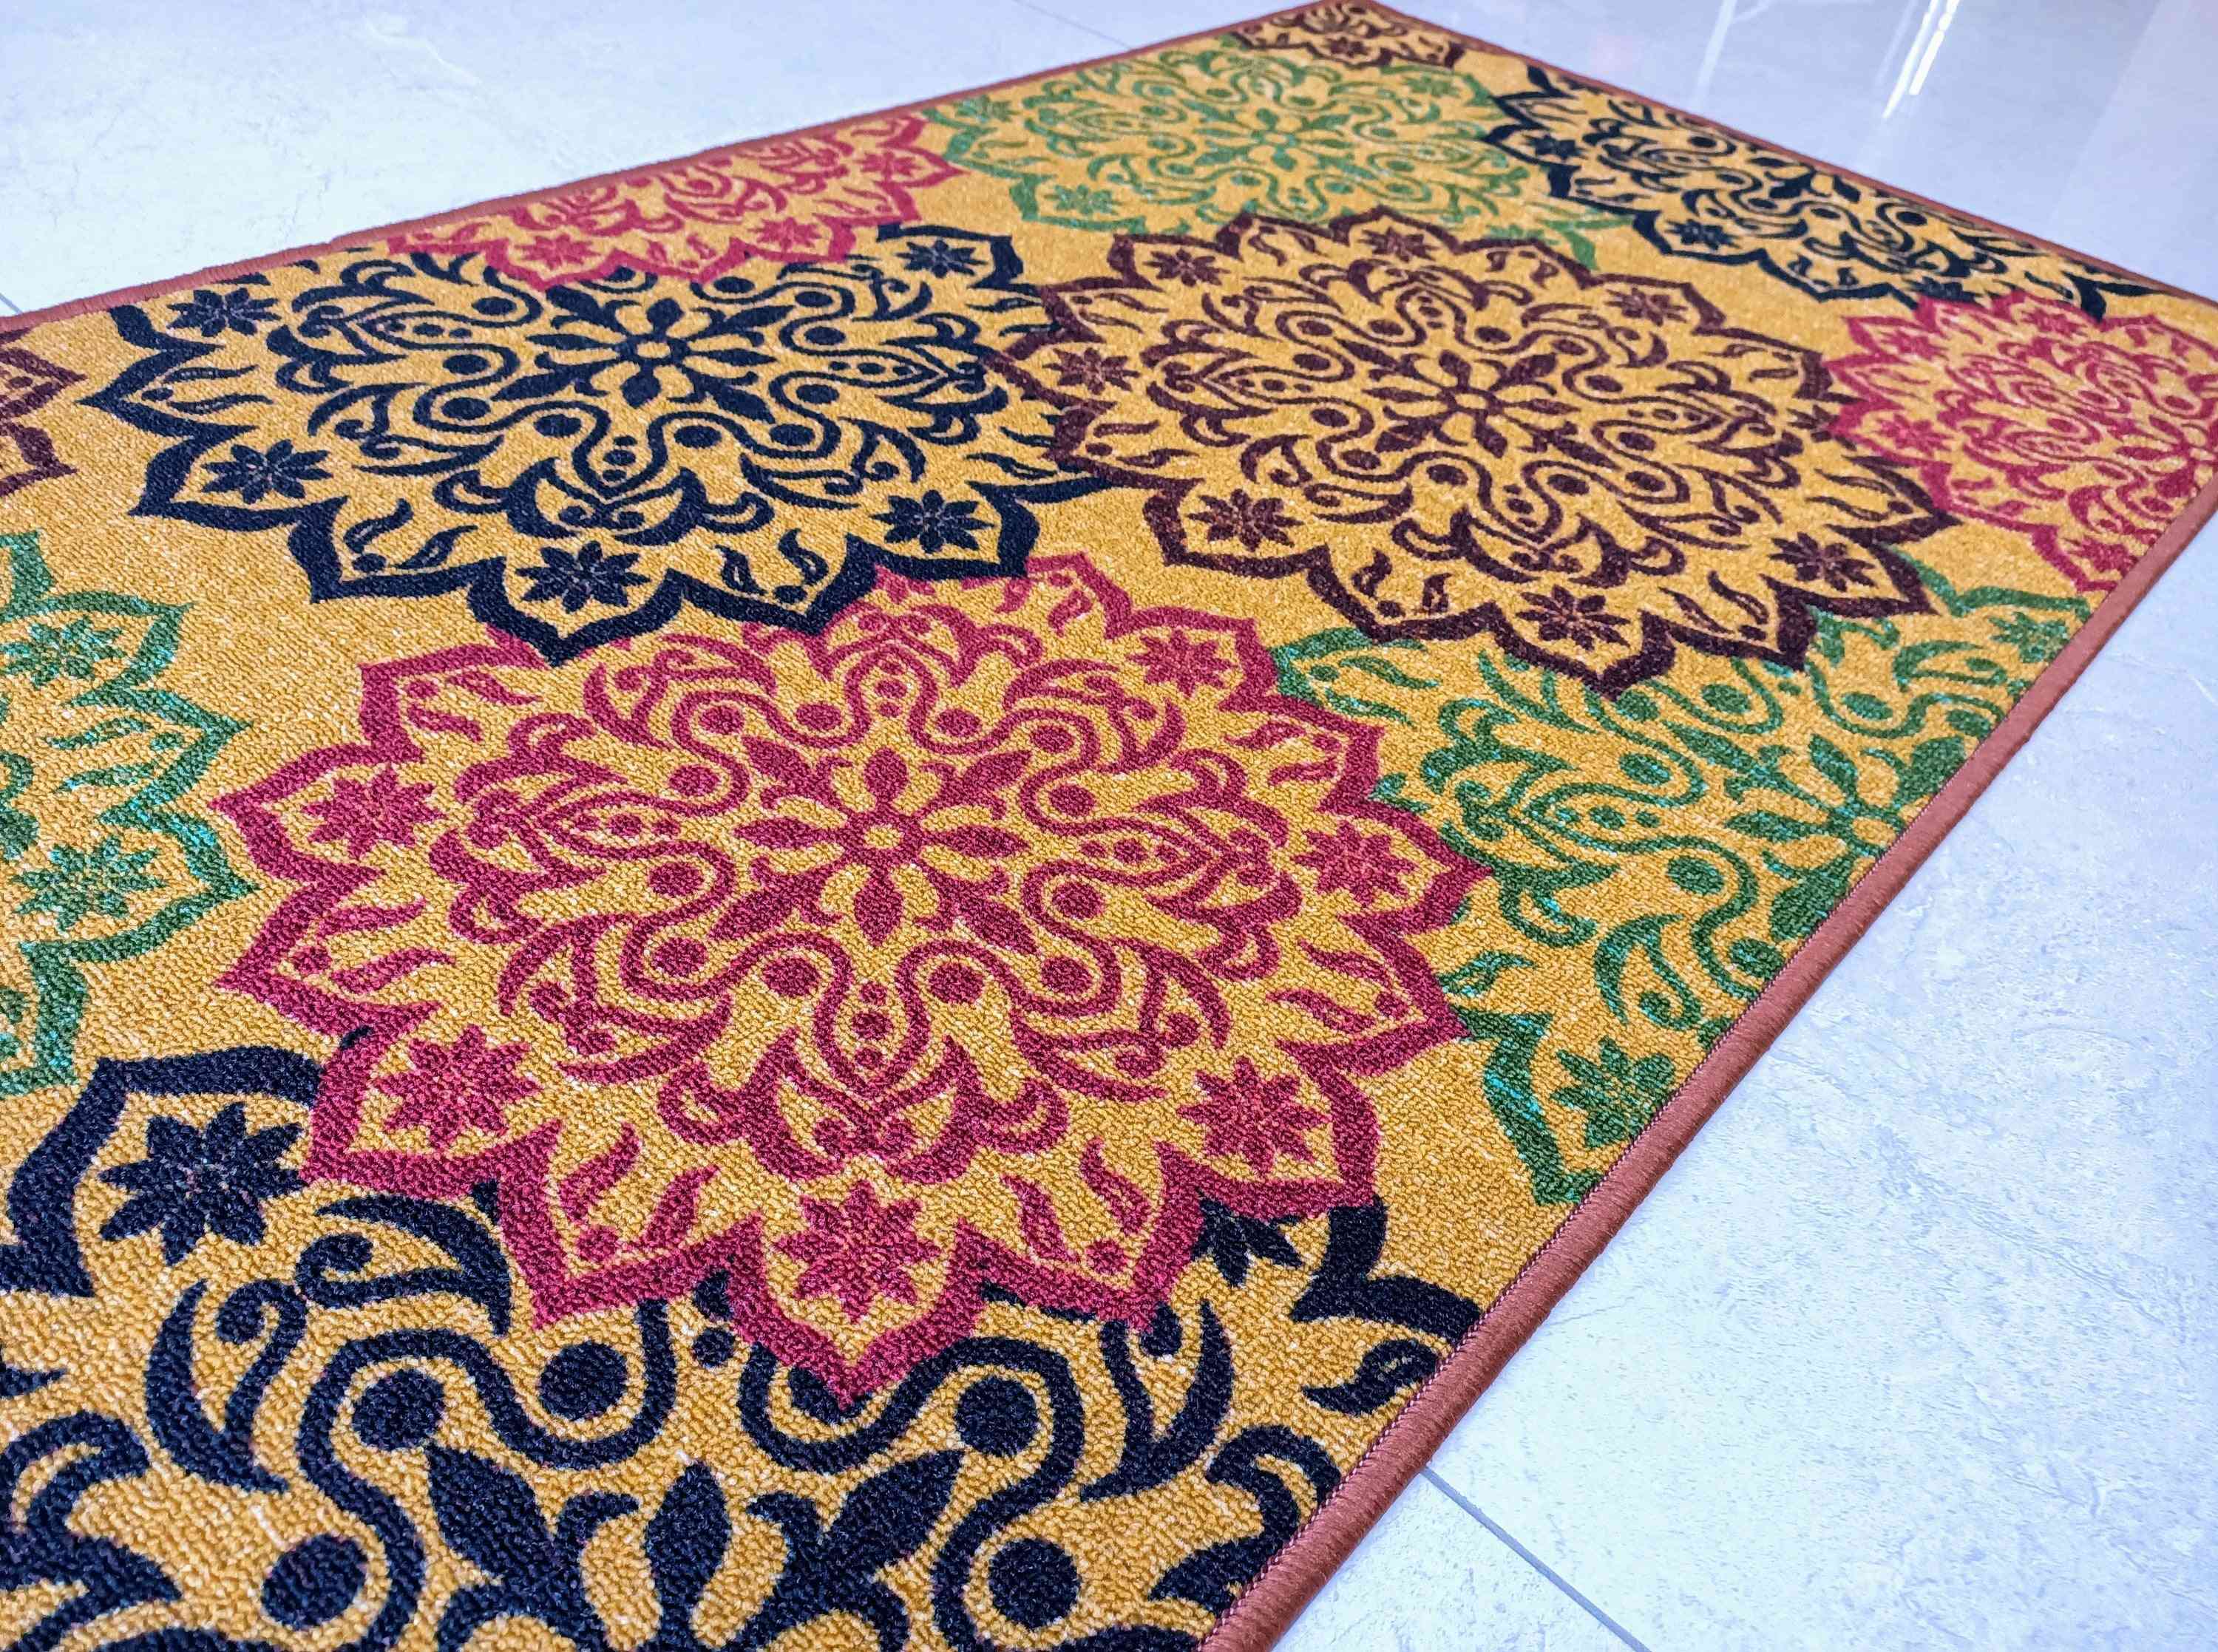 Estilo de decoración dorada, poliéster, alfombra / corredores pequeños antideslizantes